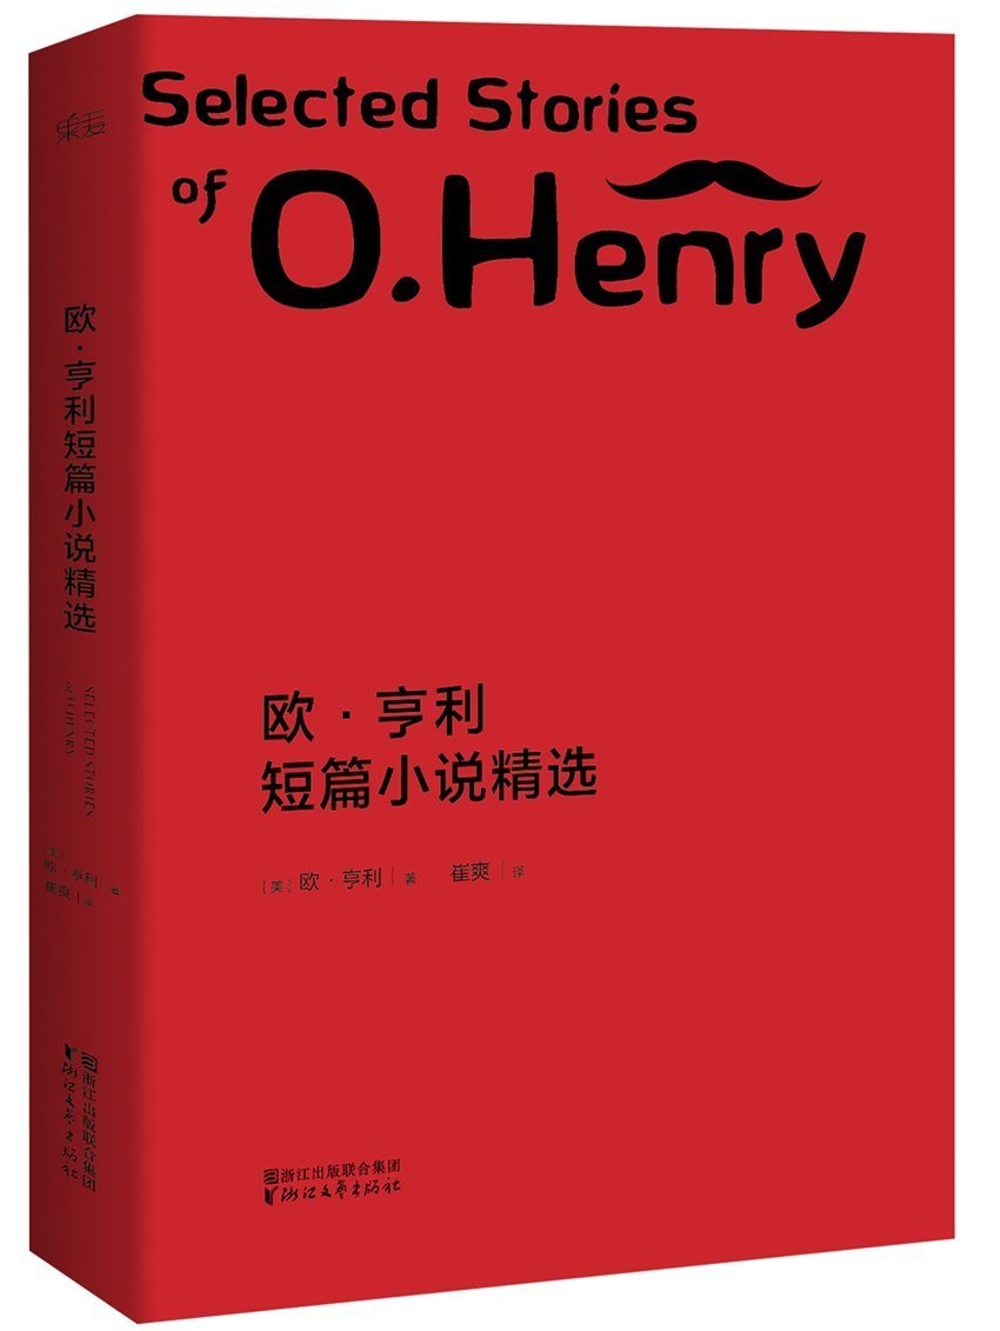 歐·亨利短篇小說精選